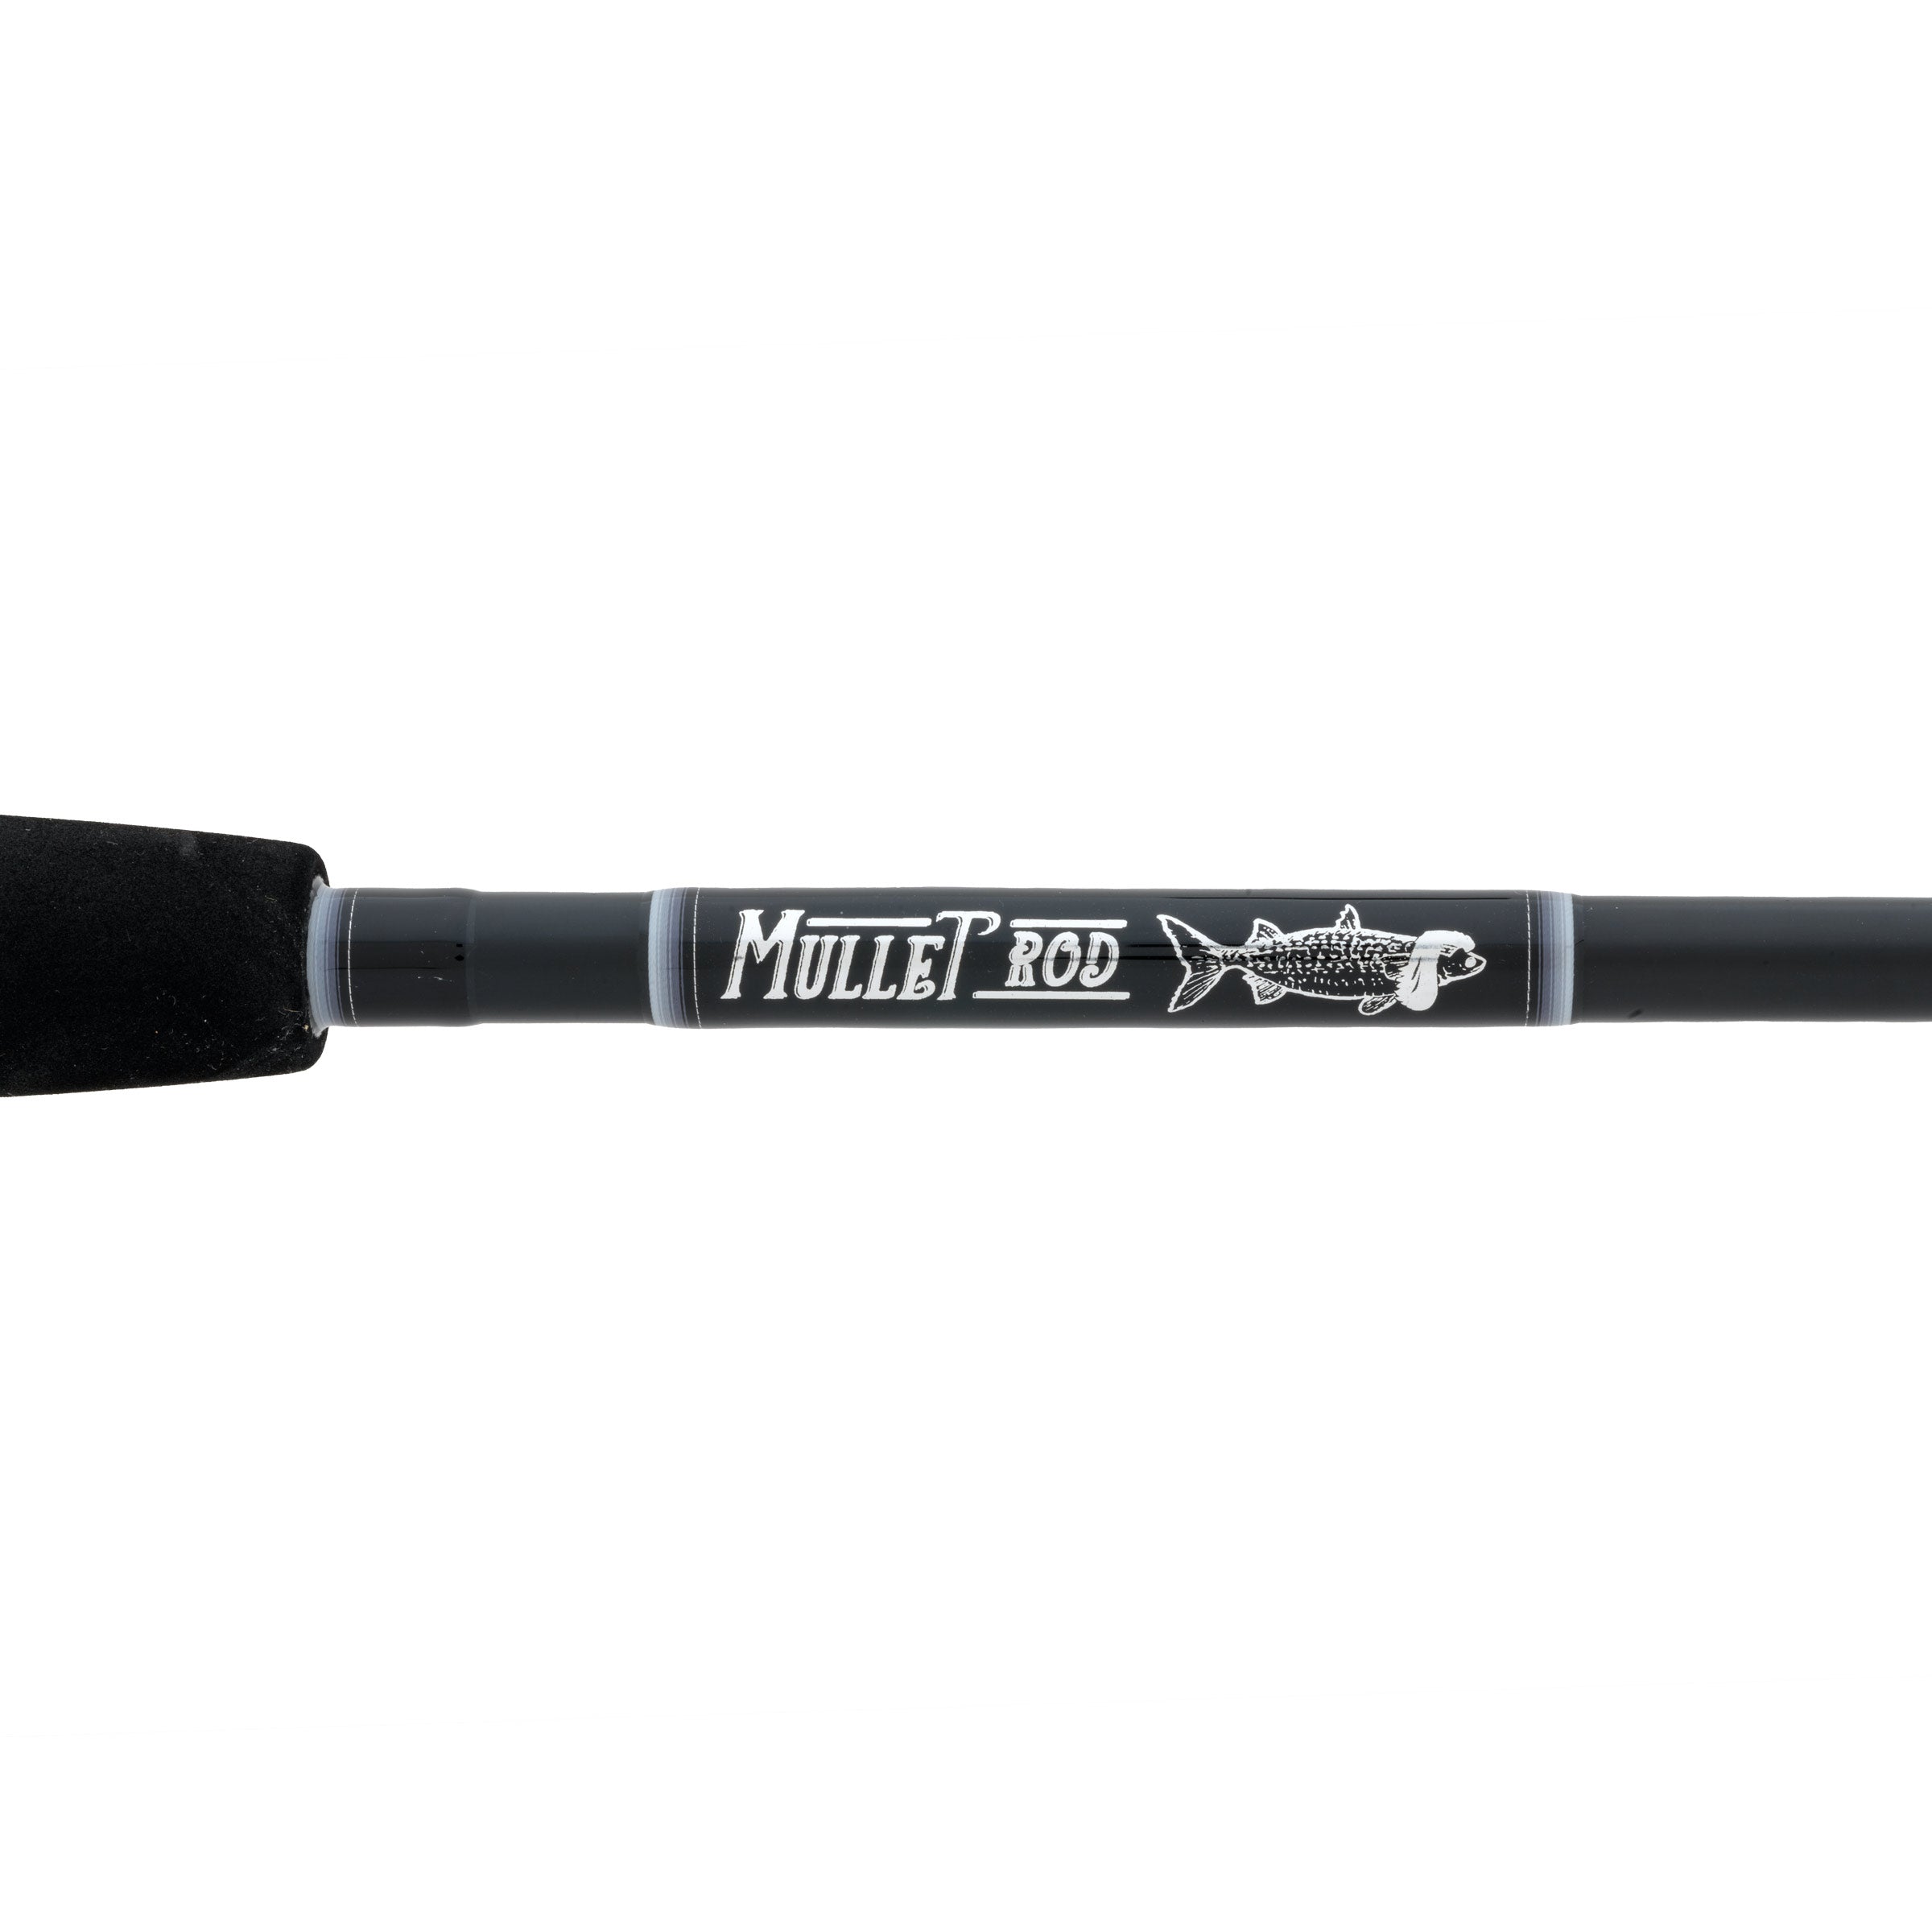 Jake’s Mullet Rod 9’ Med-Heavy Surf & Inlet Saltwater Rod Component Kit